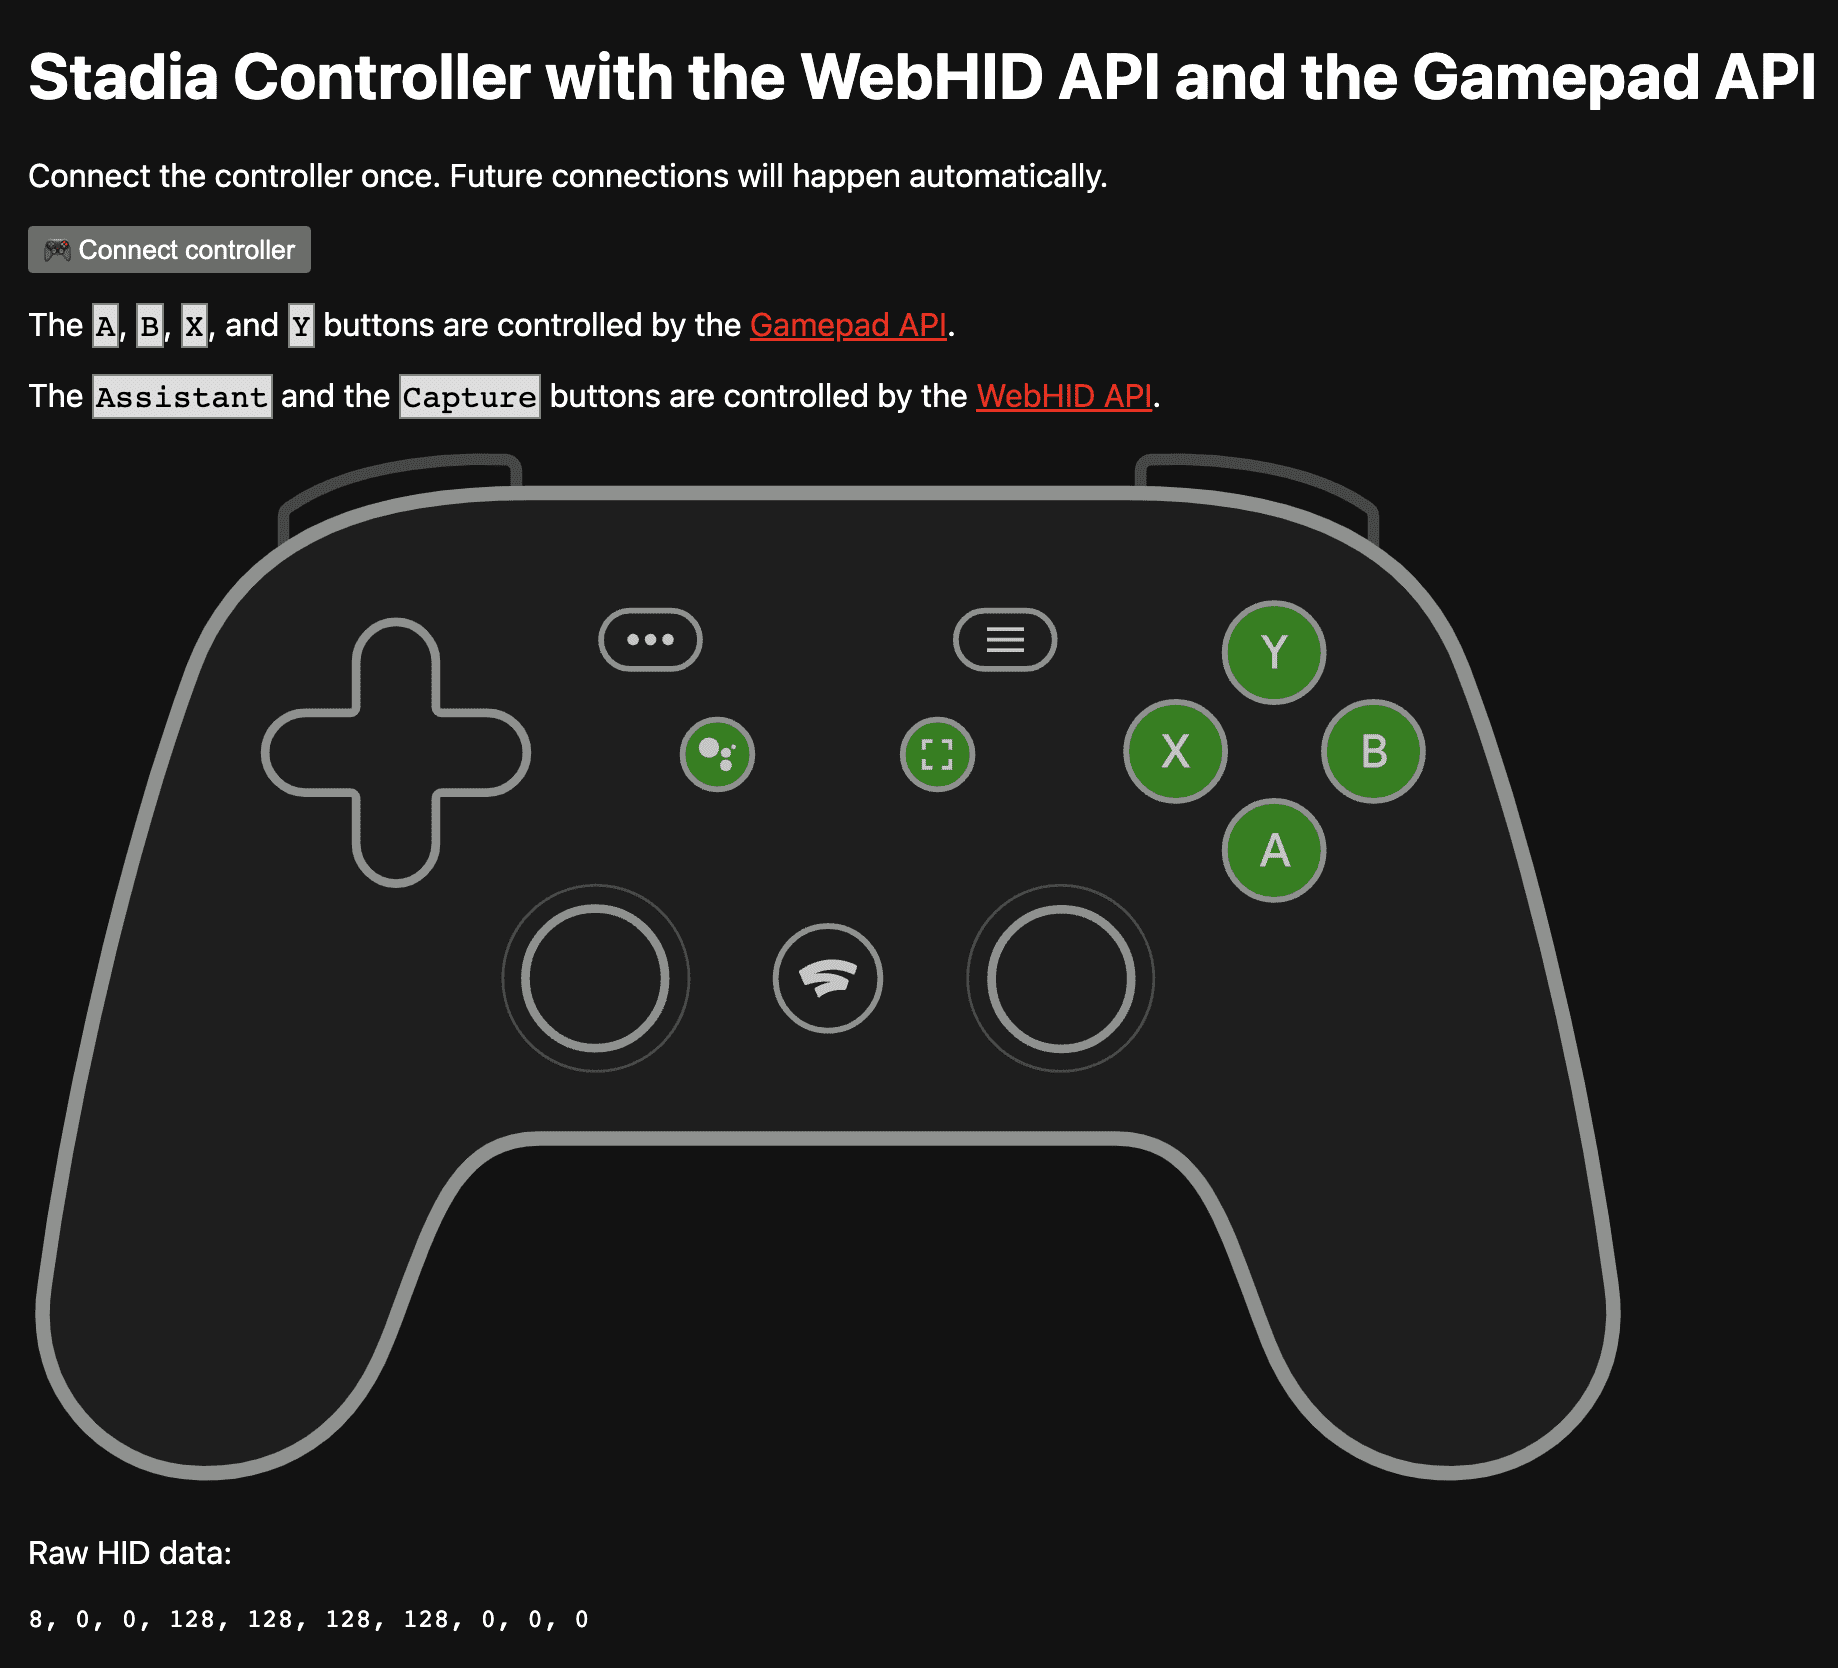 La app de demostración en https://stadia-controller-webhid-gamepad.glitch.me/ muestra los botones A, B, X y Y que controla la API de Gamepad, y la API de WebHID controla el Asistente y los botones Capture.